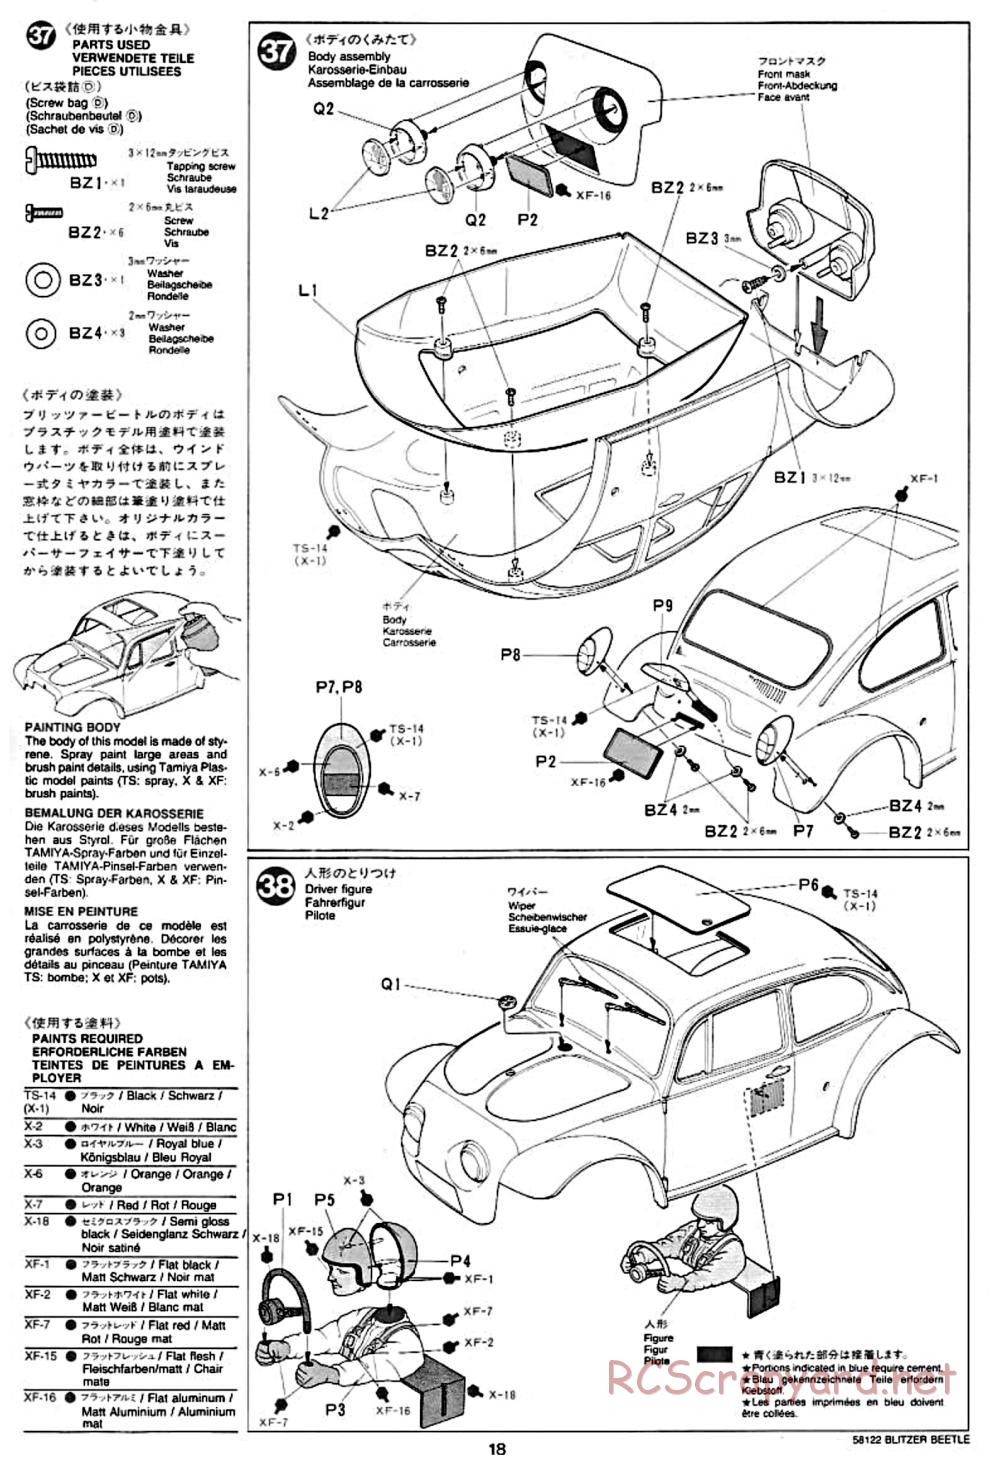 Tamiya - Blitzer Beetle Chassis - Manual - Page 18